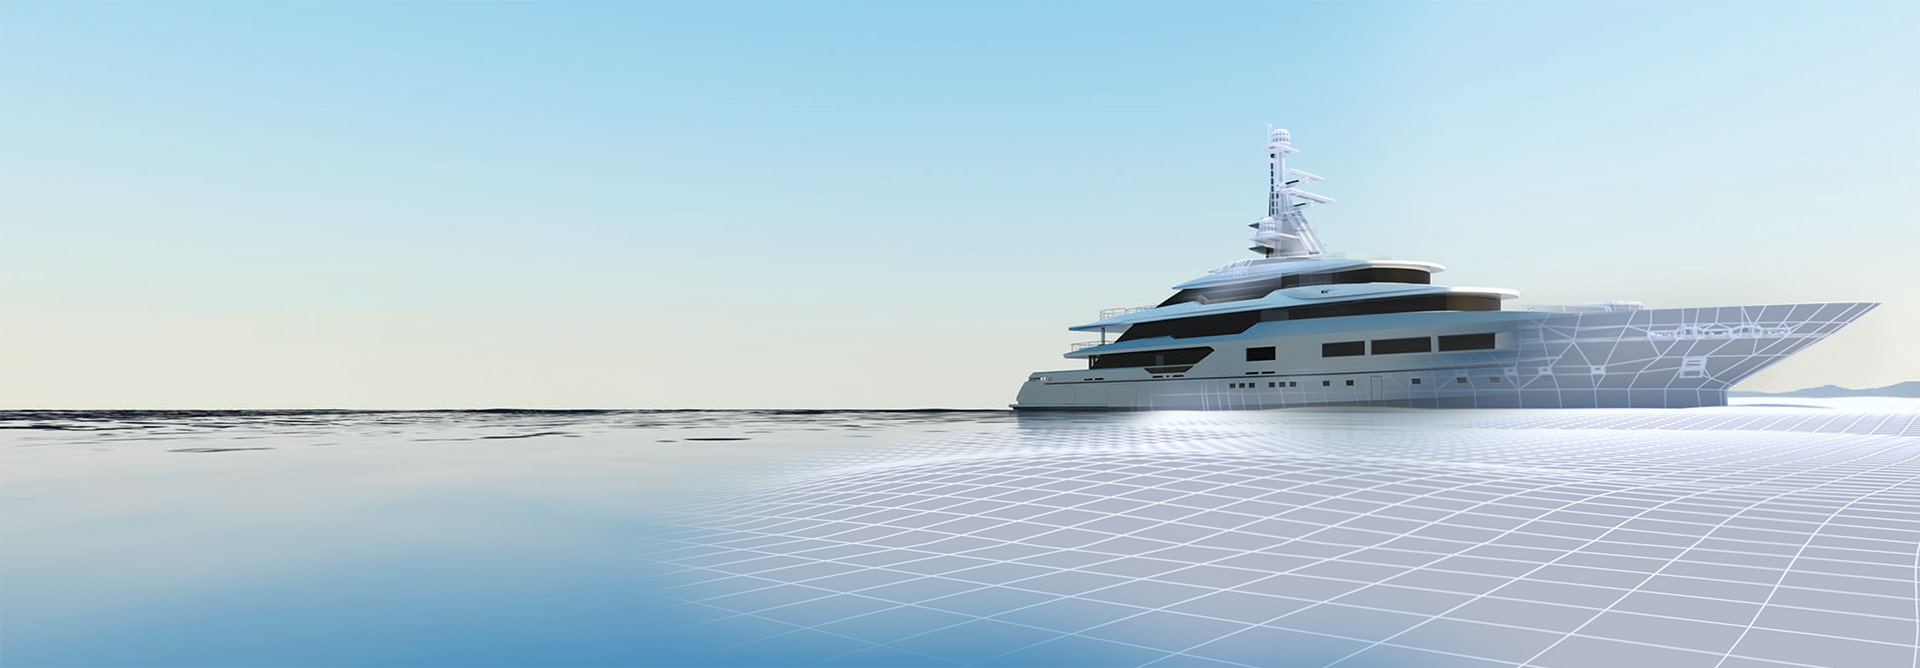 Yacht renderings